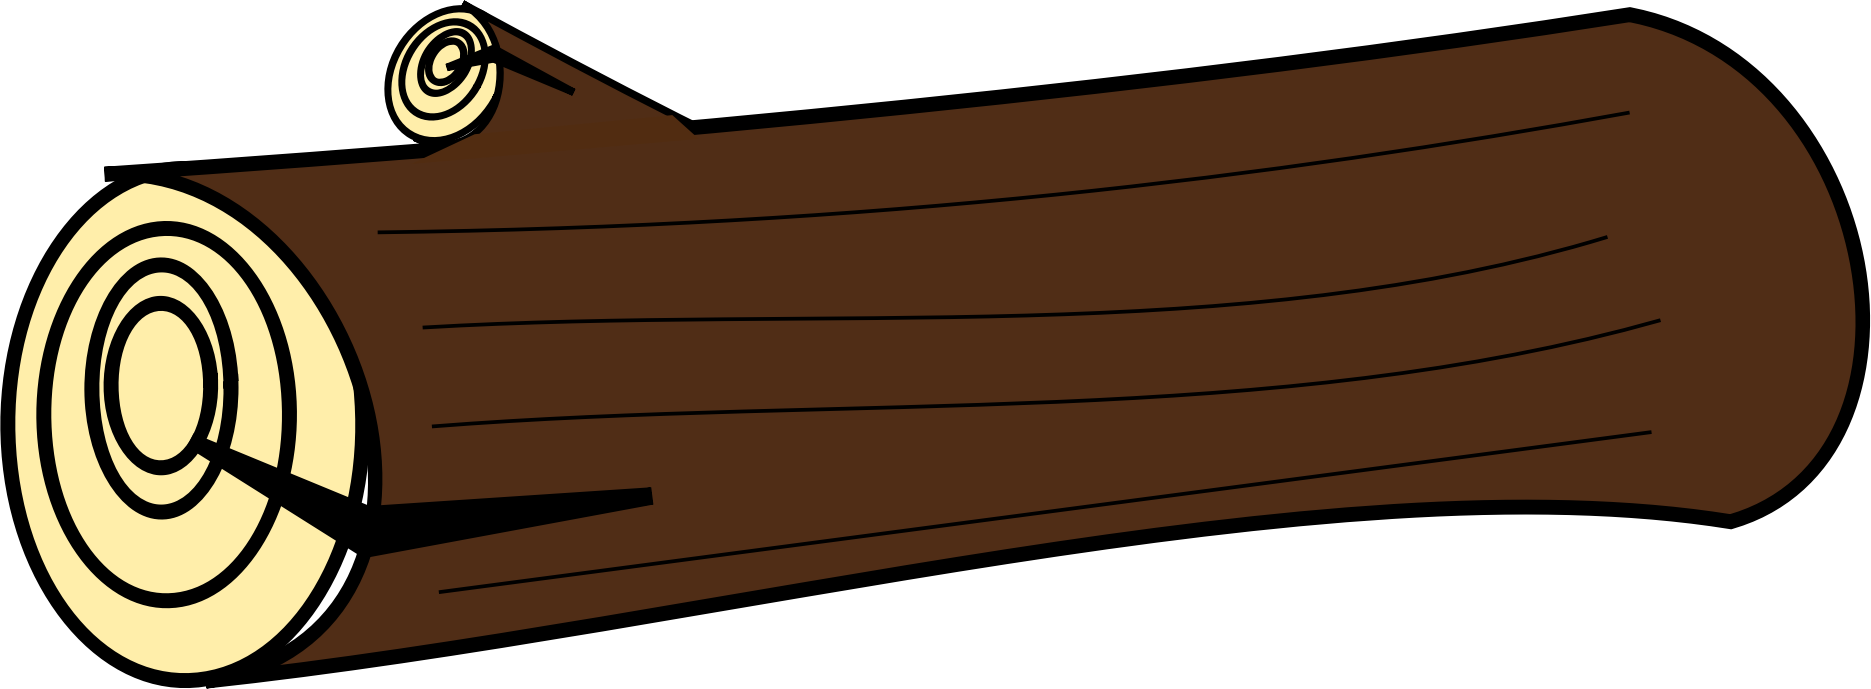 Plaque wooden log